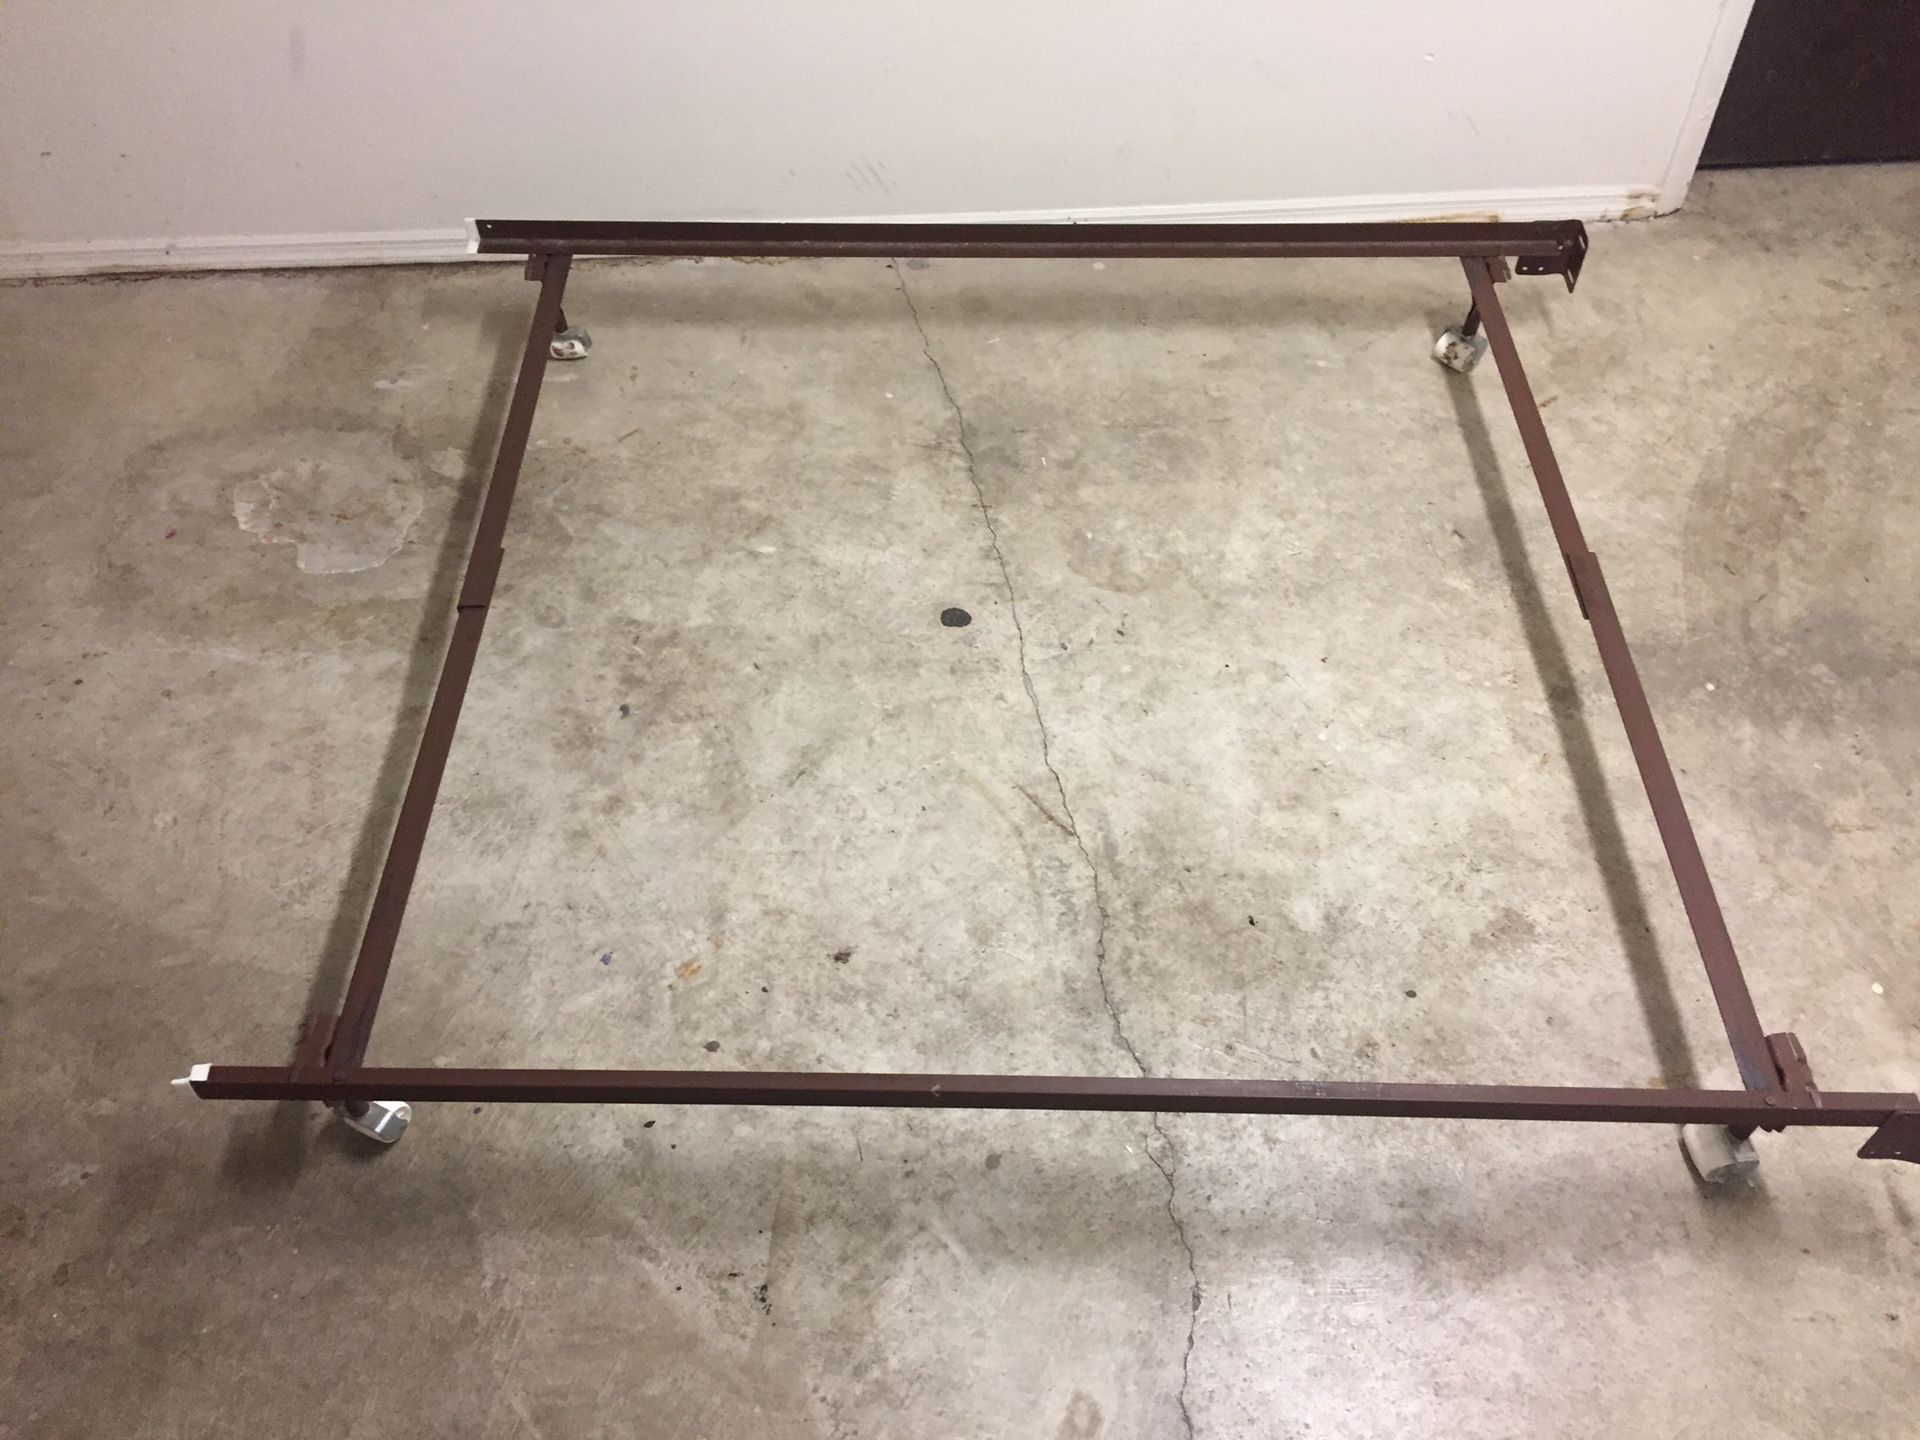 Metal bed frame